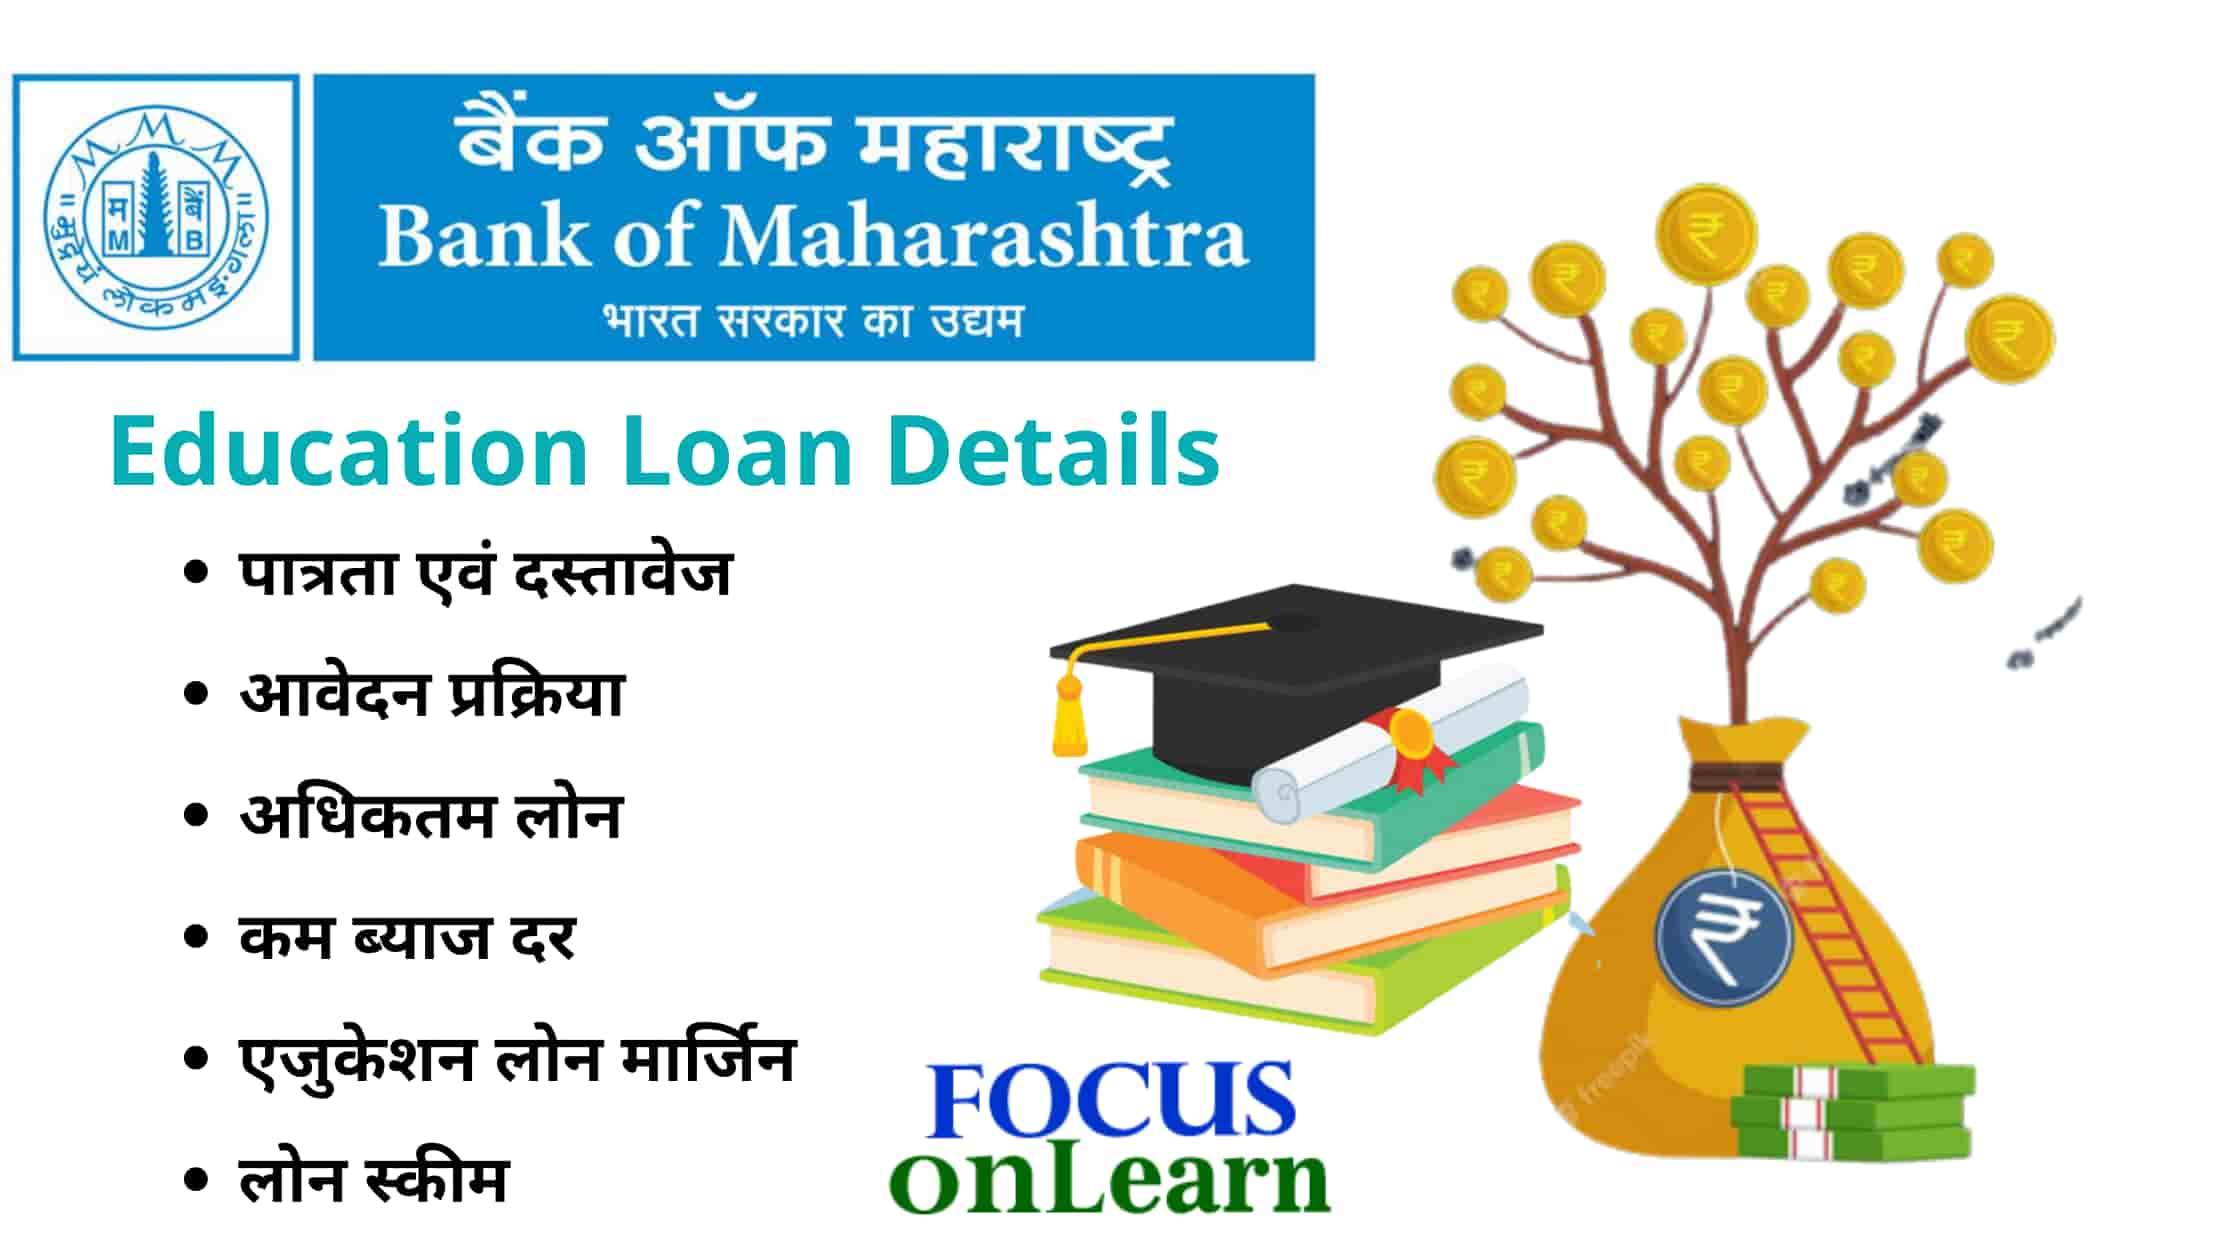 Bank of Maharashtra Education Loan in Hindi